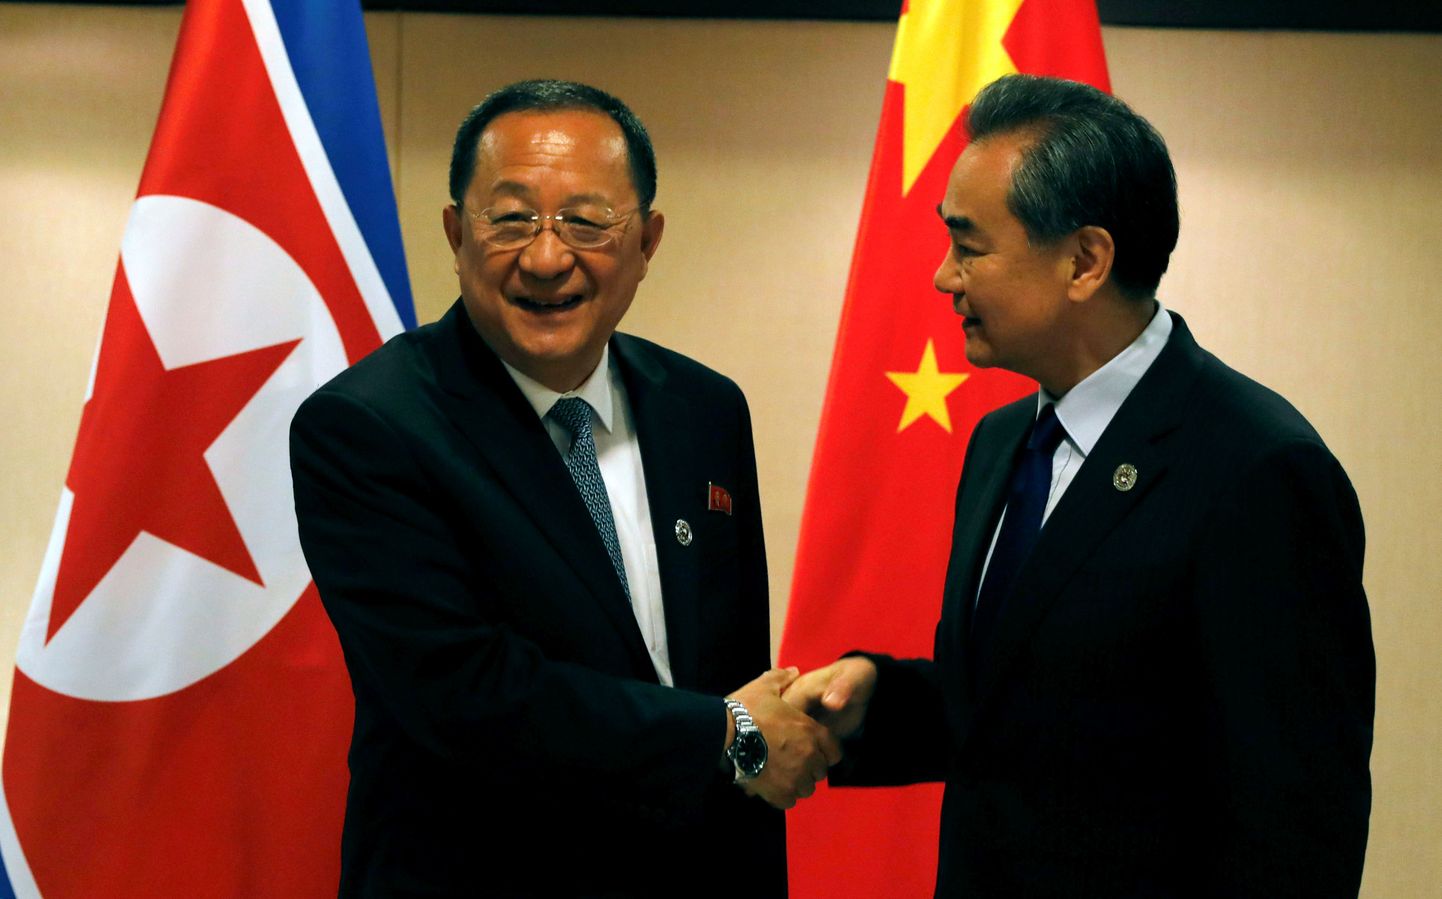 Hiina välisminister Wang Yi (paremal) koos Põhja-Korea välisminister Ri Yong Ho-ga Lõuna-Aasia riikide tippkohtumisel Manilas.